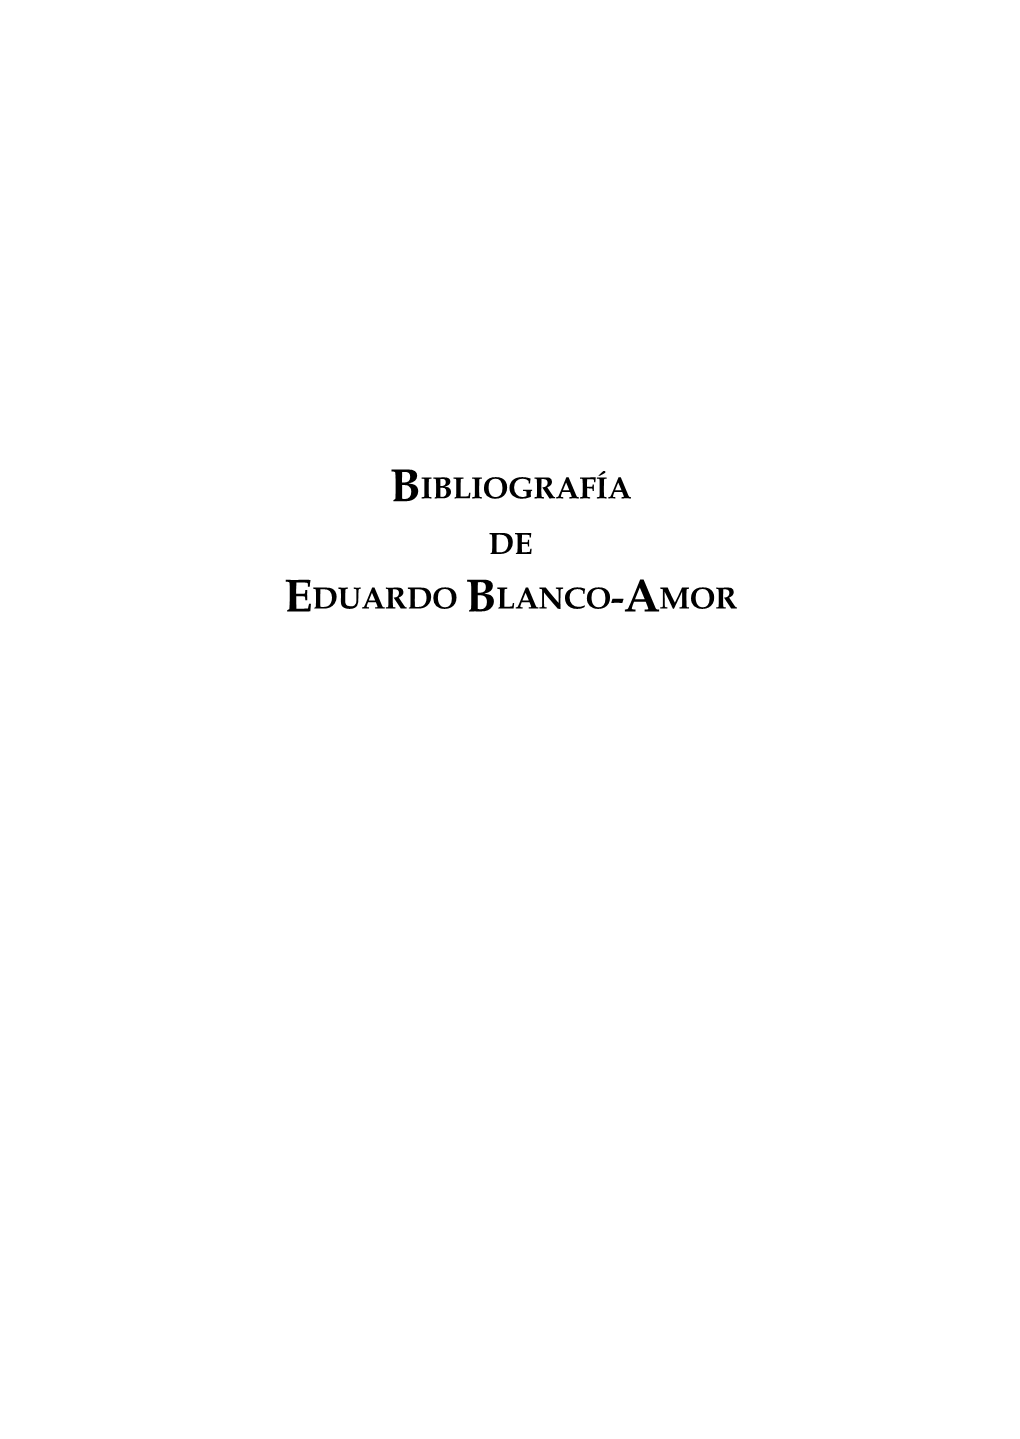 EDUARDO BLANCO-AMOR Eduardo Blanco-Amor : Bibliografía1